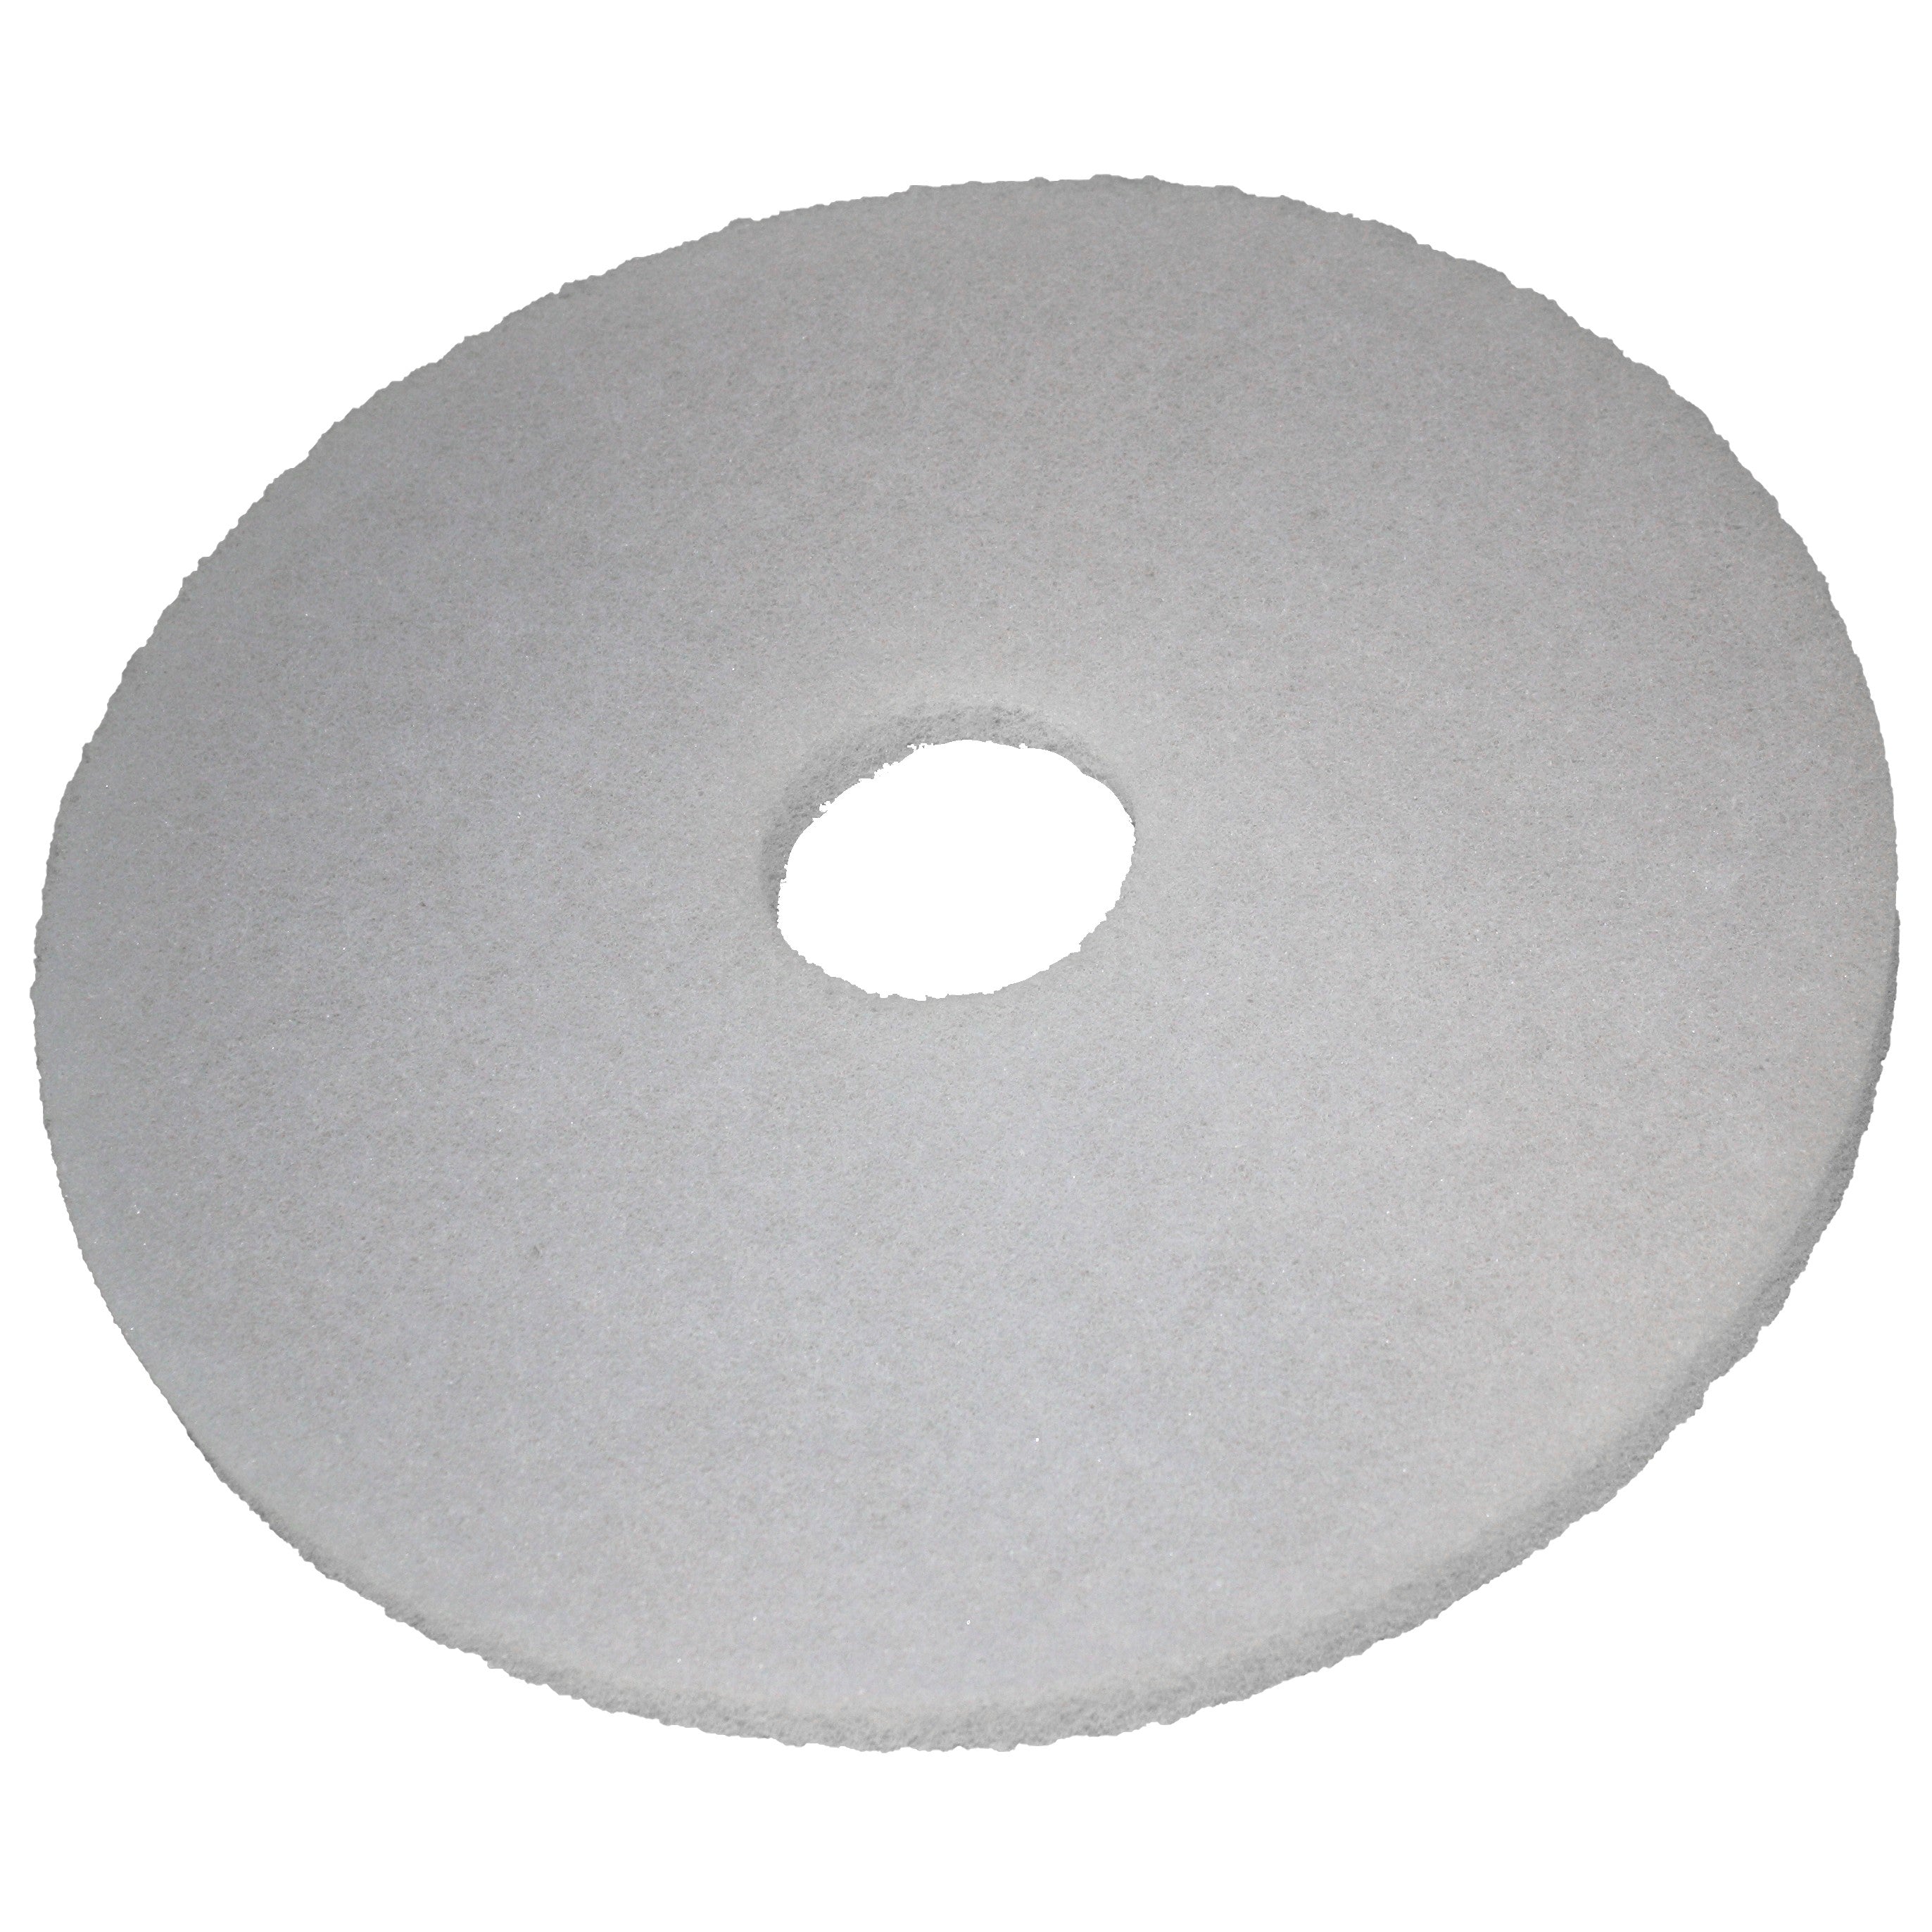 Pad blanc, Ø 152 mm, polyester